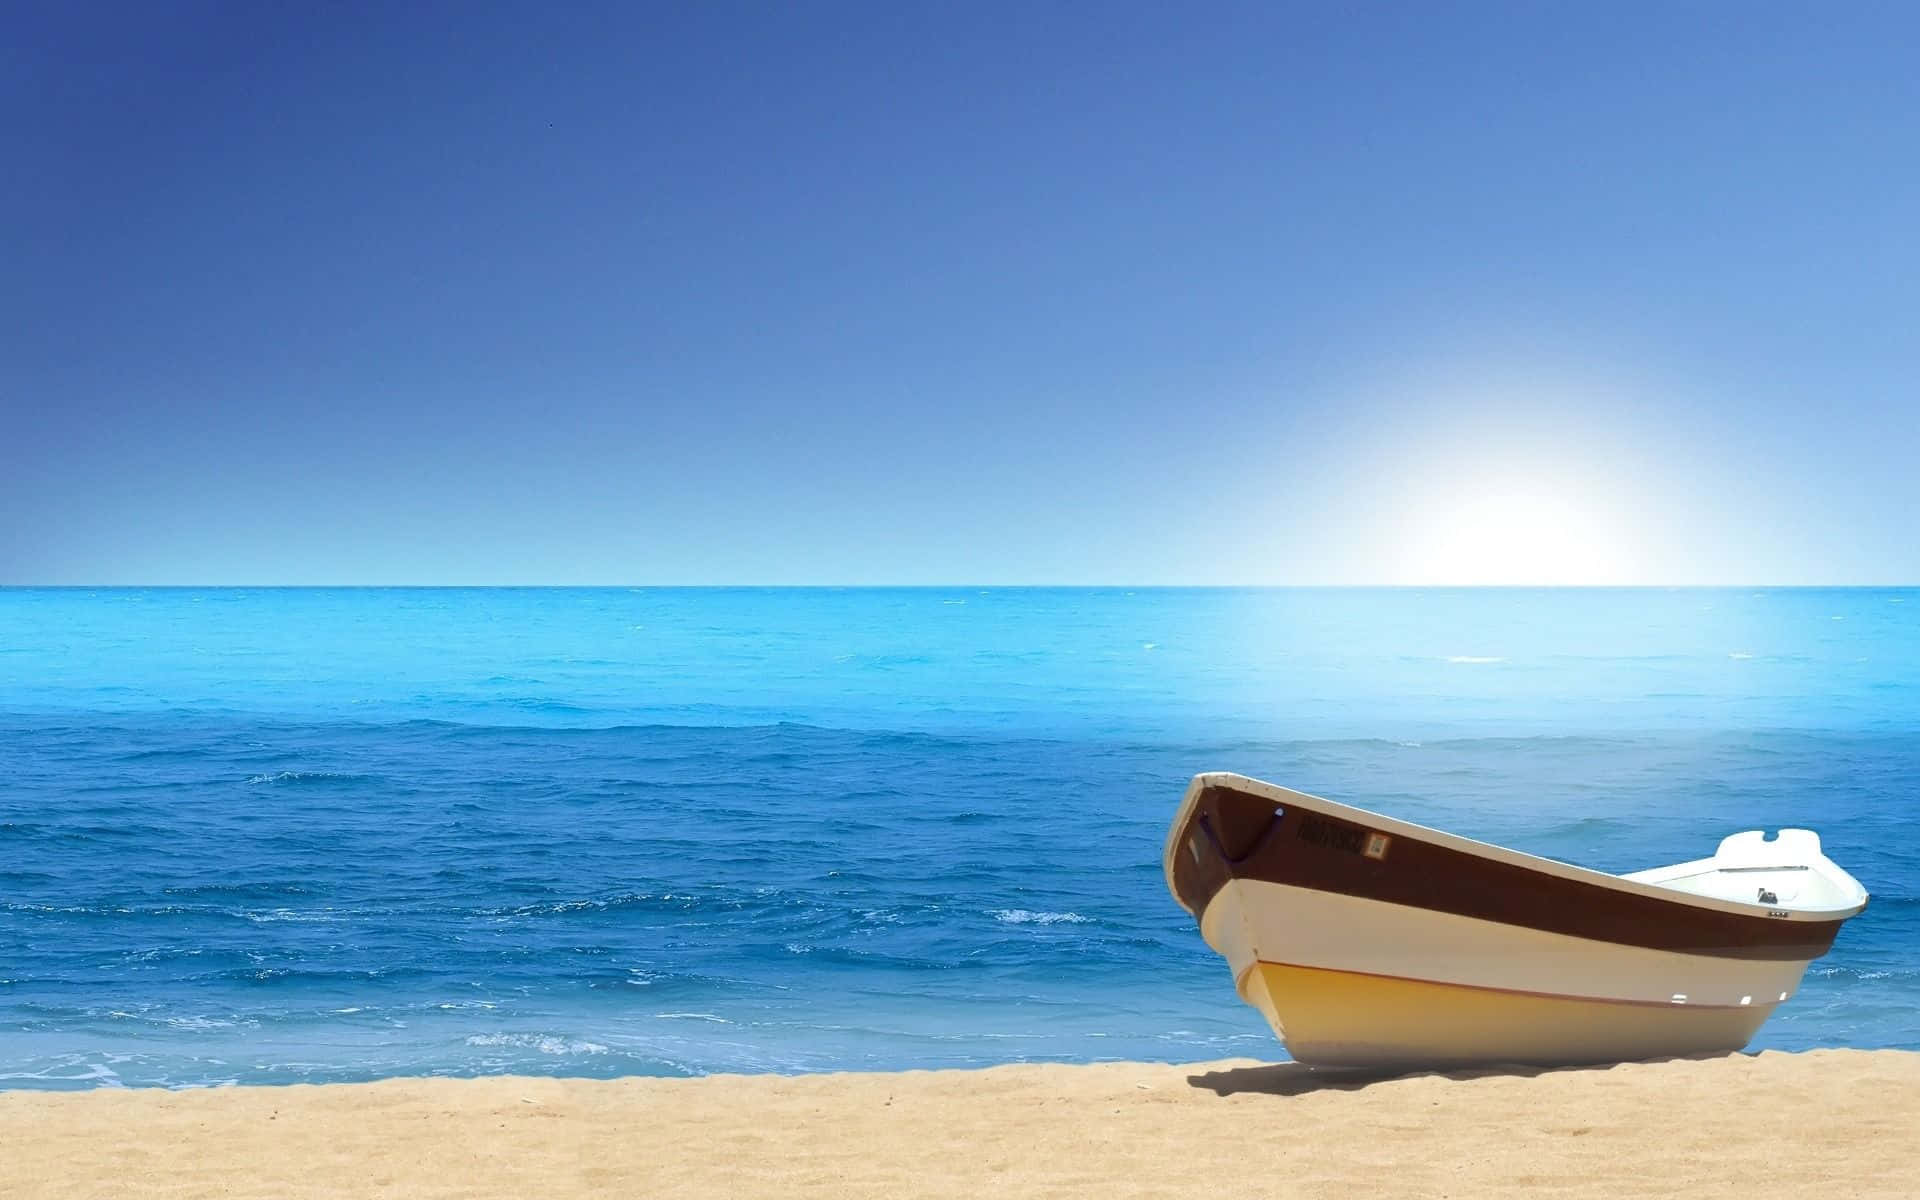 Sunny Day Boat Sea Shore Wallpaper